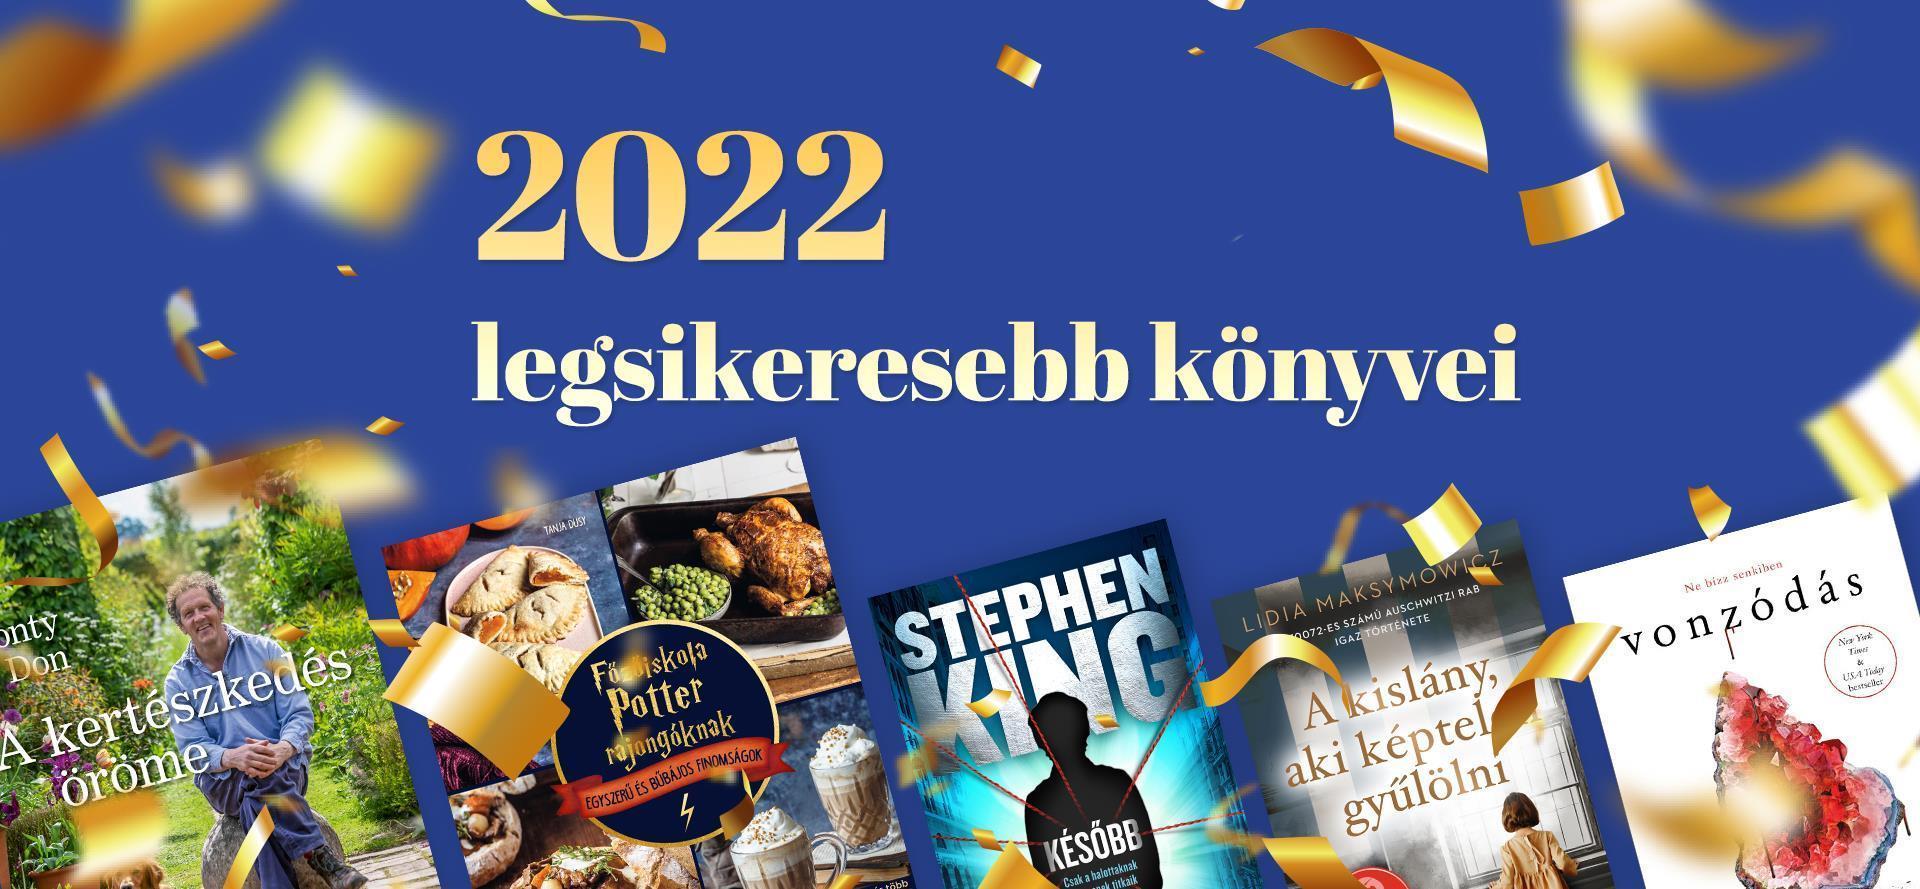 2022 legsikeresebb könyvei